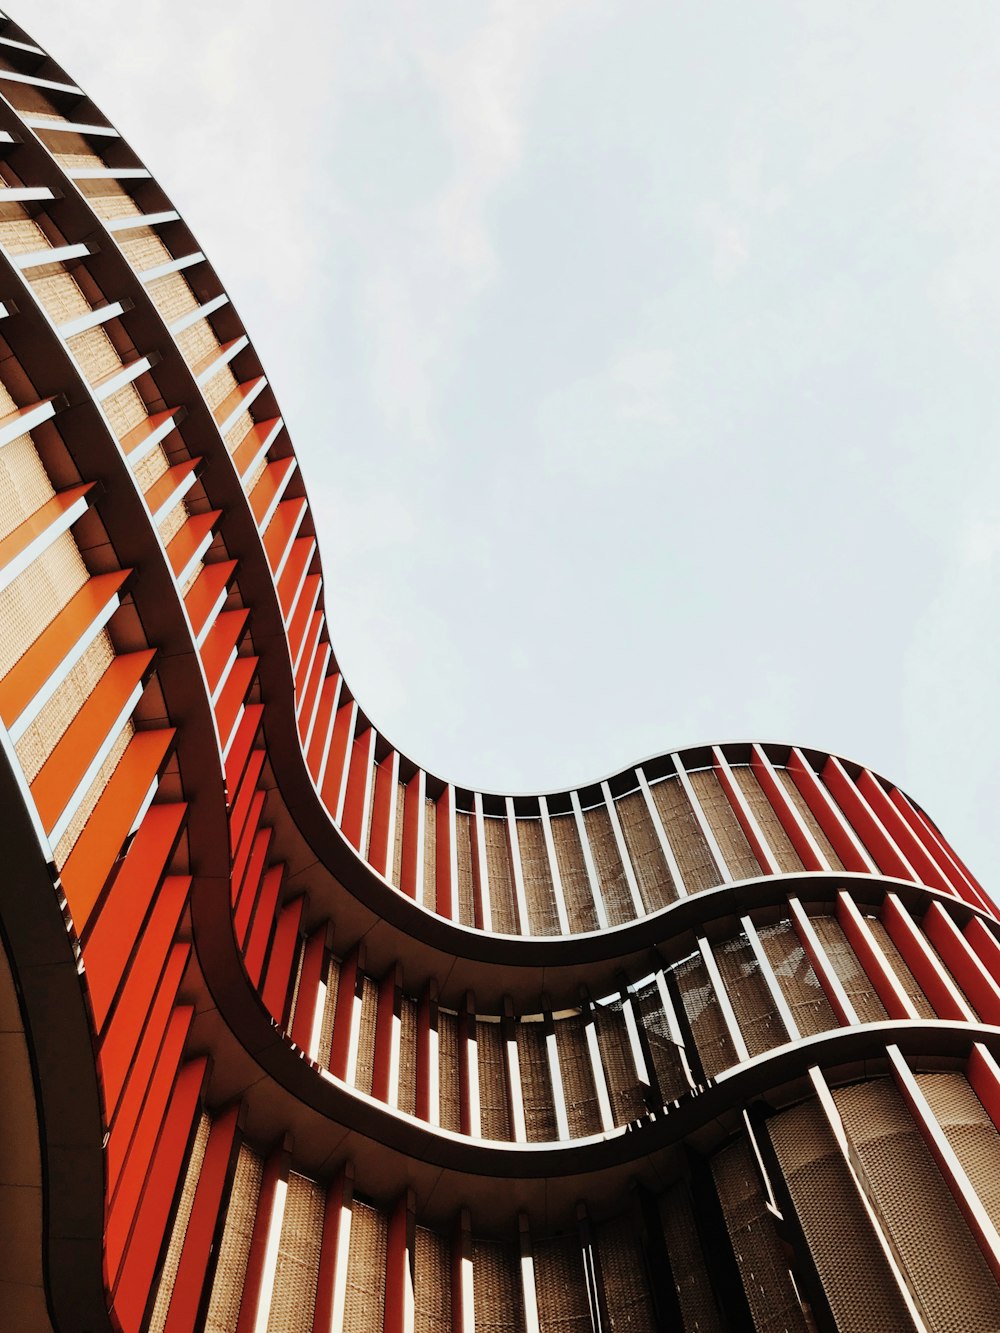 Vue en contre-plongée d’un bâtiment architectural orange et brun